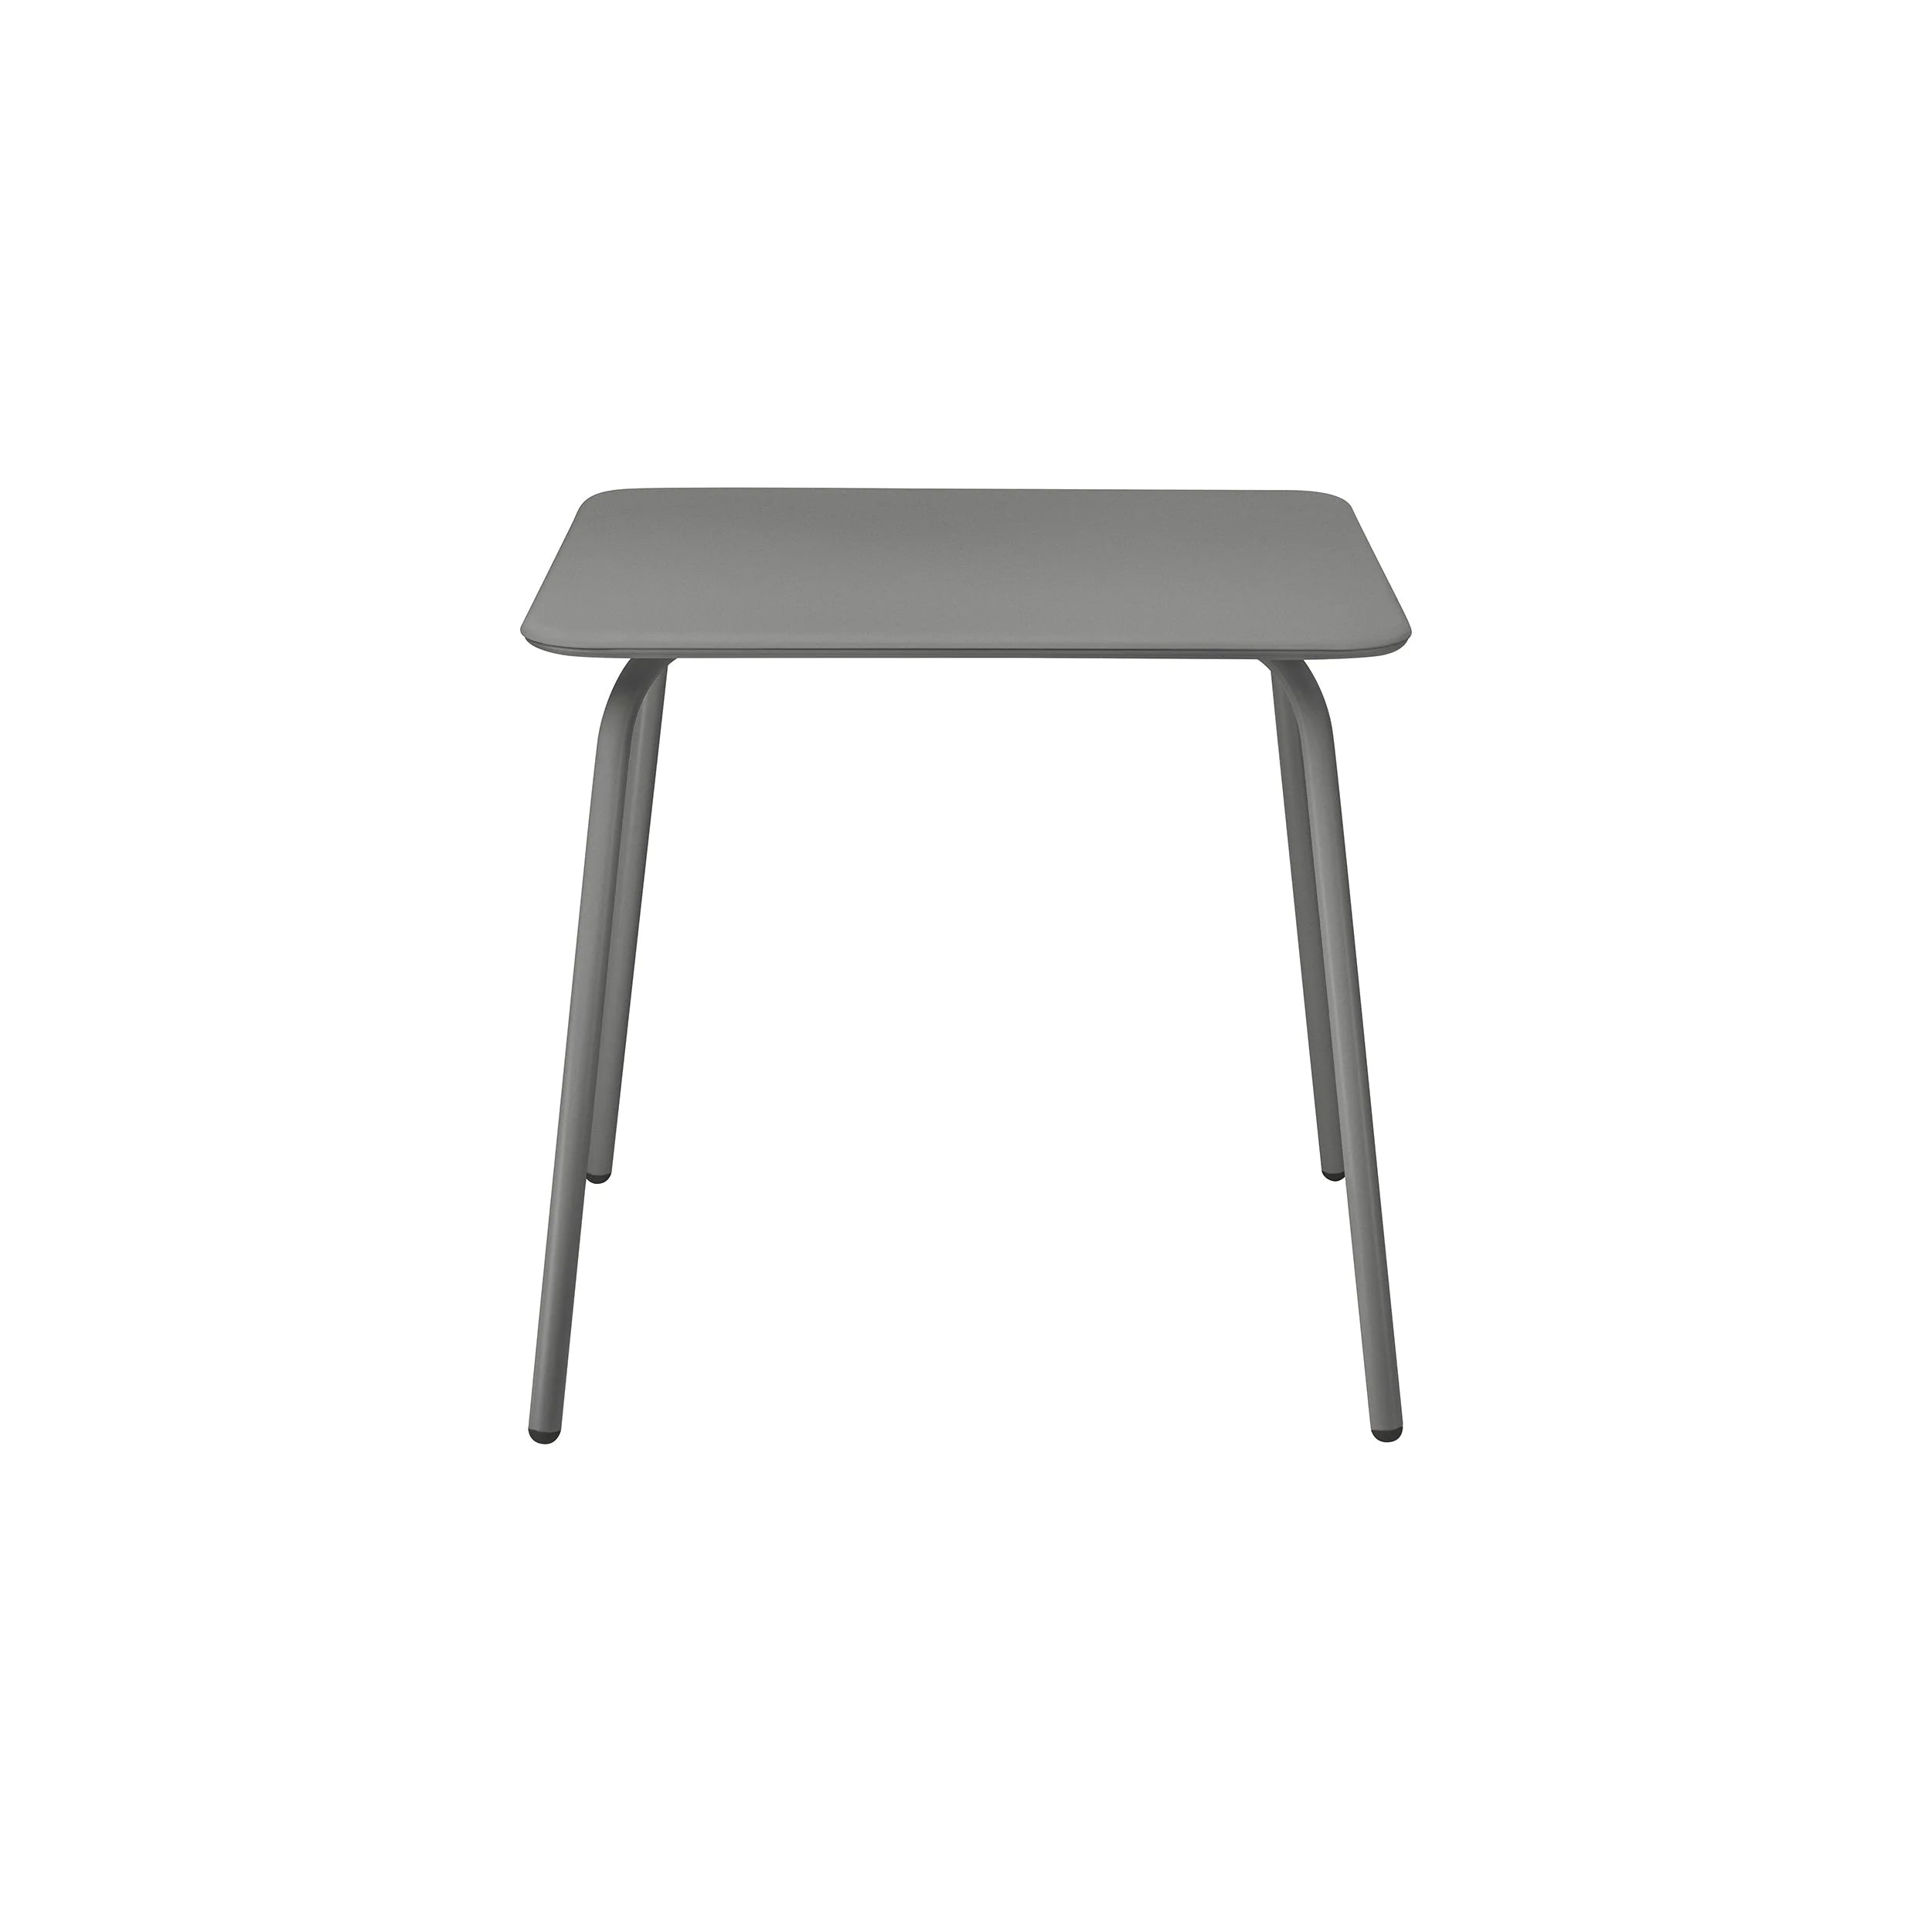 YUA Outdoor Square Bistro Table -Granite Grey